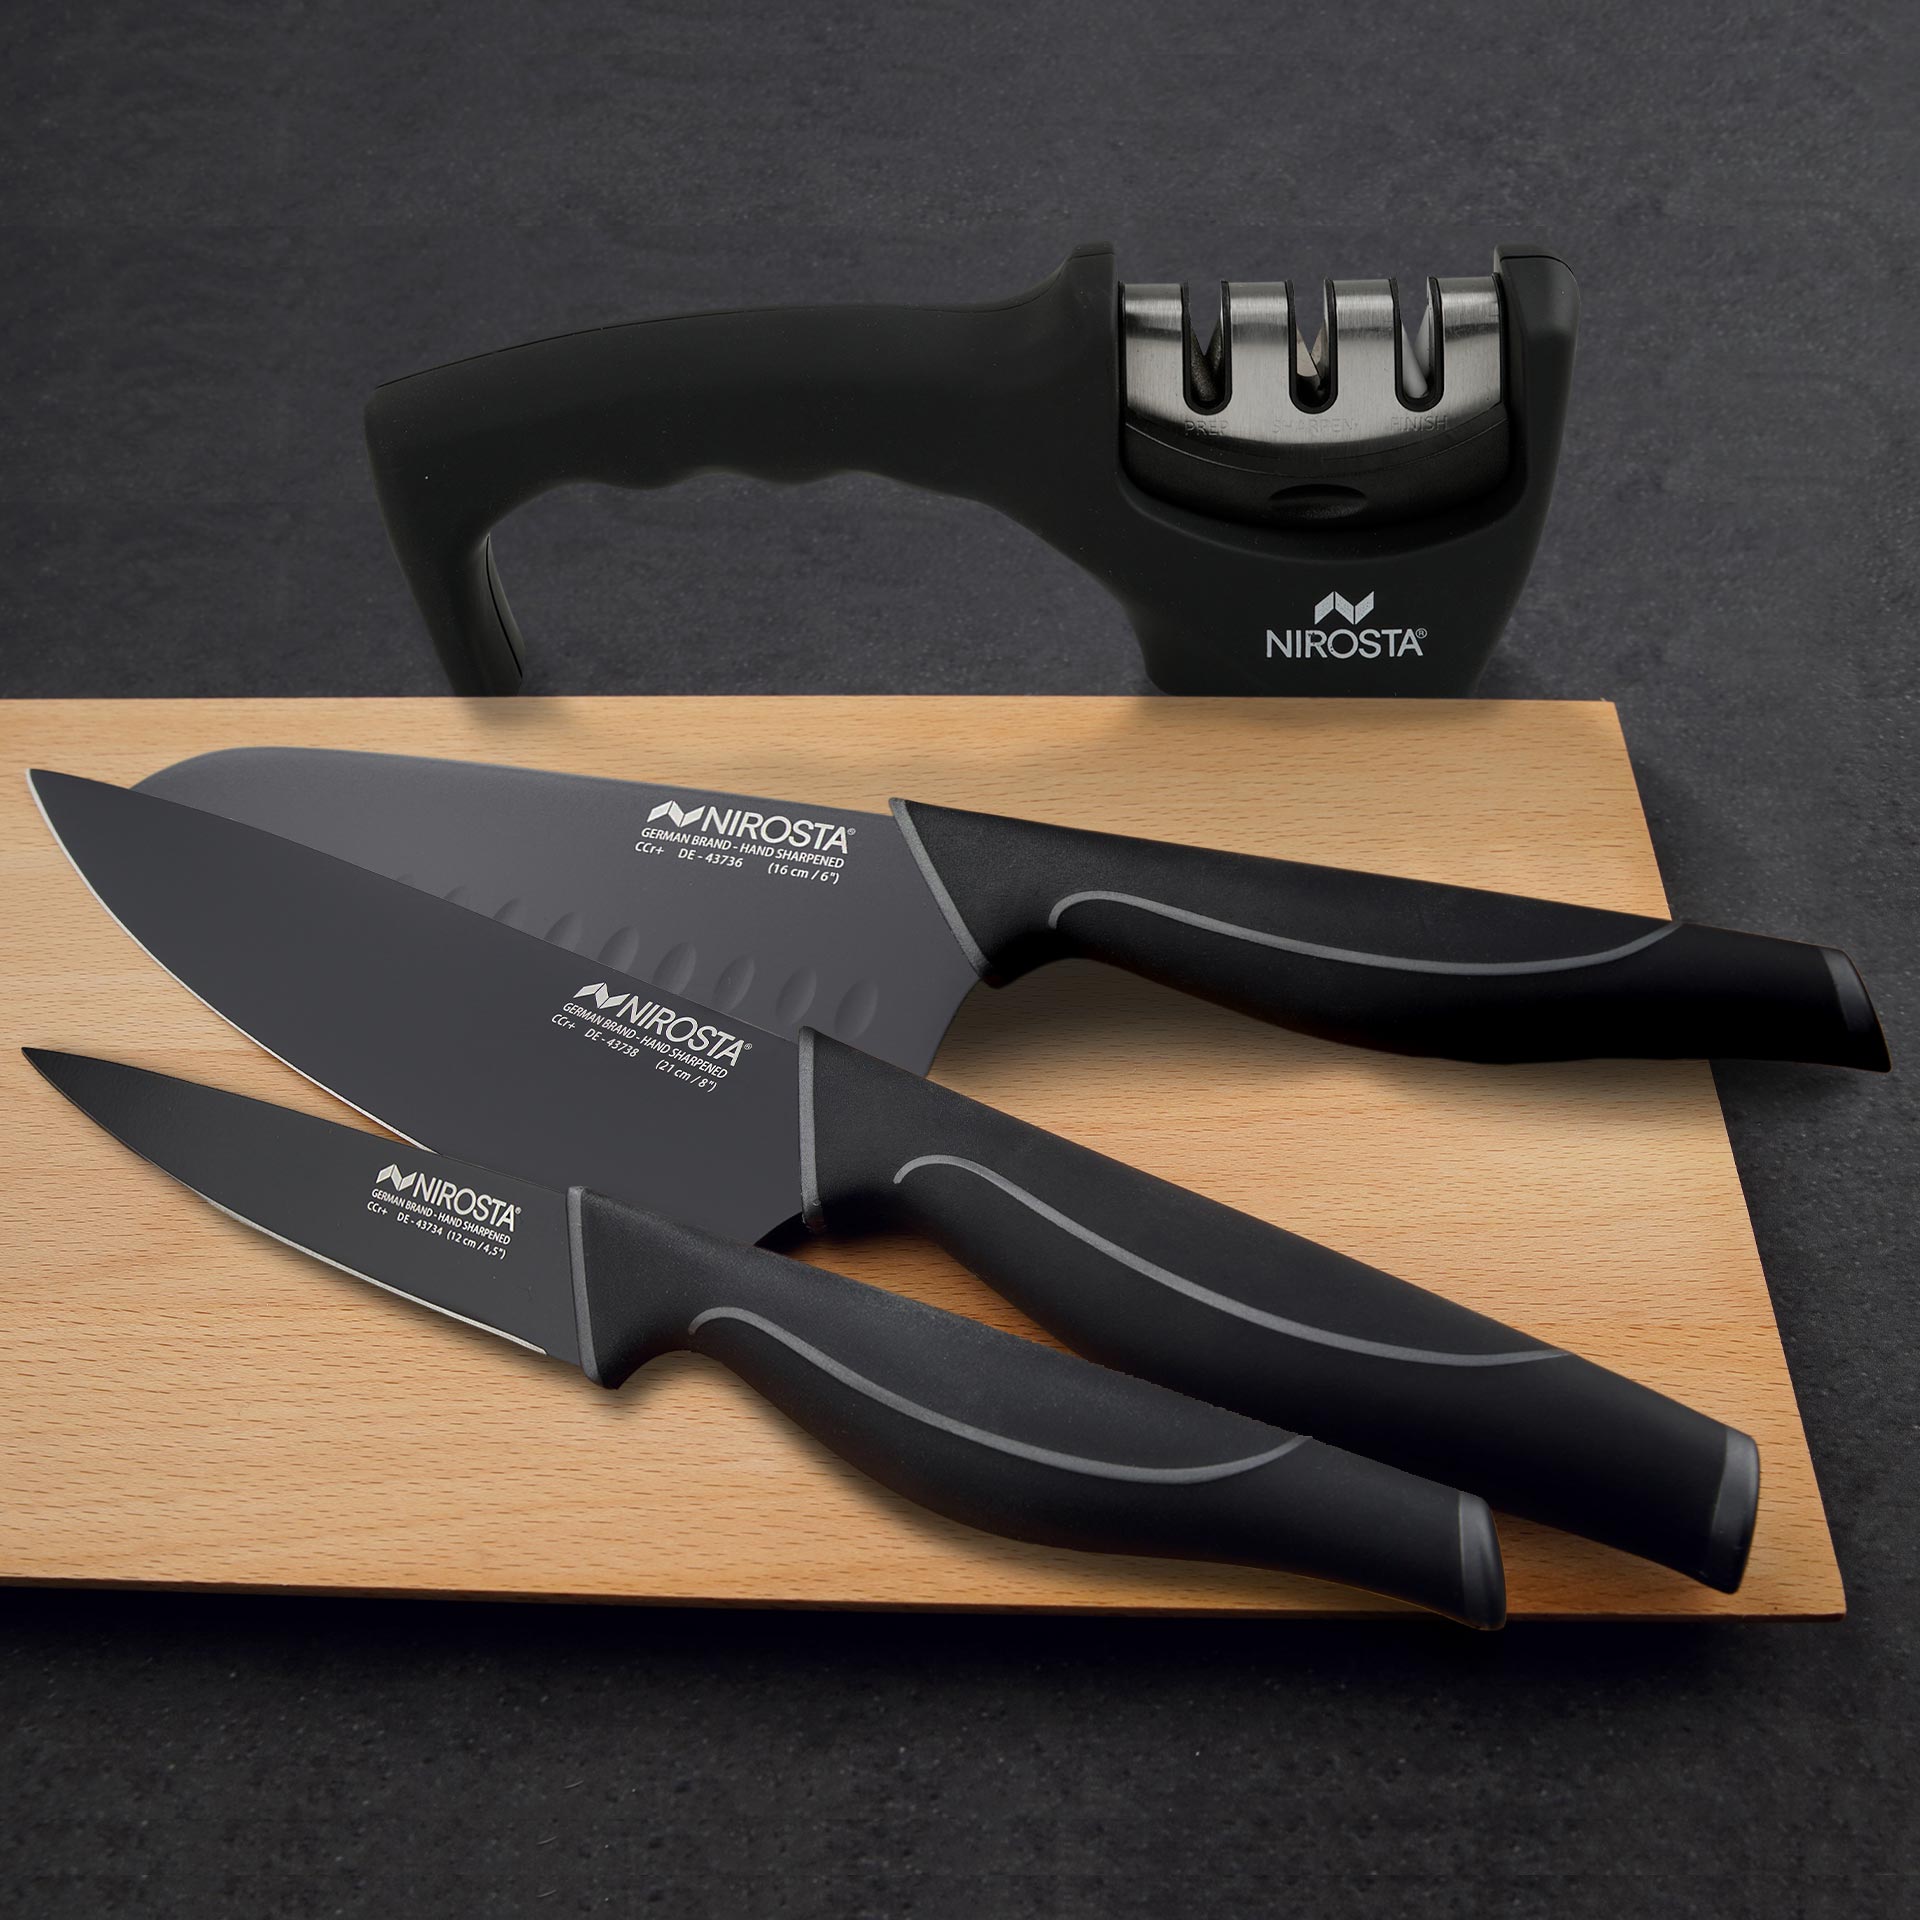 Set Cuchillos Nirosta Wave, 4 piezas: Cuchillo Santoku, Cuchillo Multiusos, Cuchillo de Chef y Afilador de Cuchillos – Calidad Profesional para su Cocina